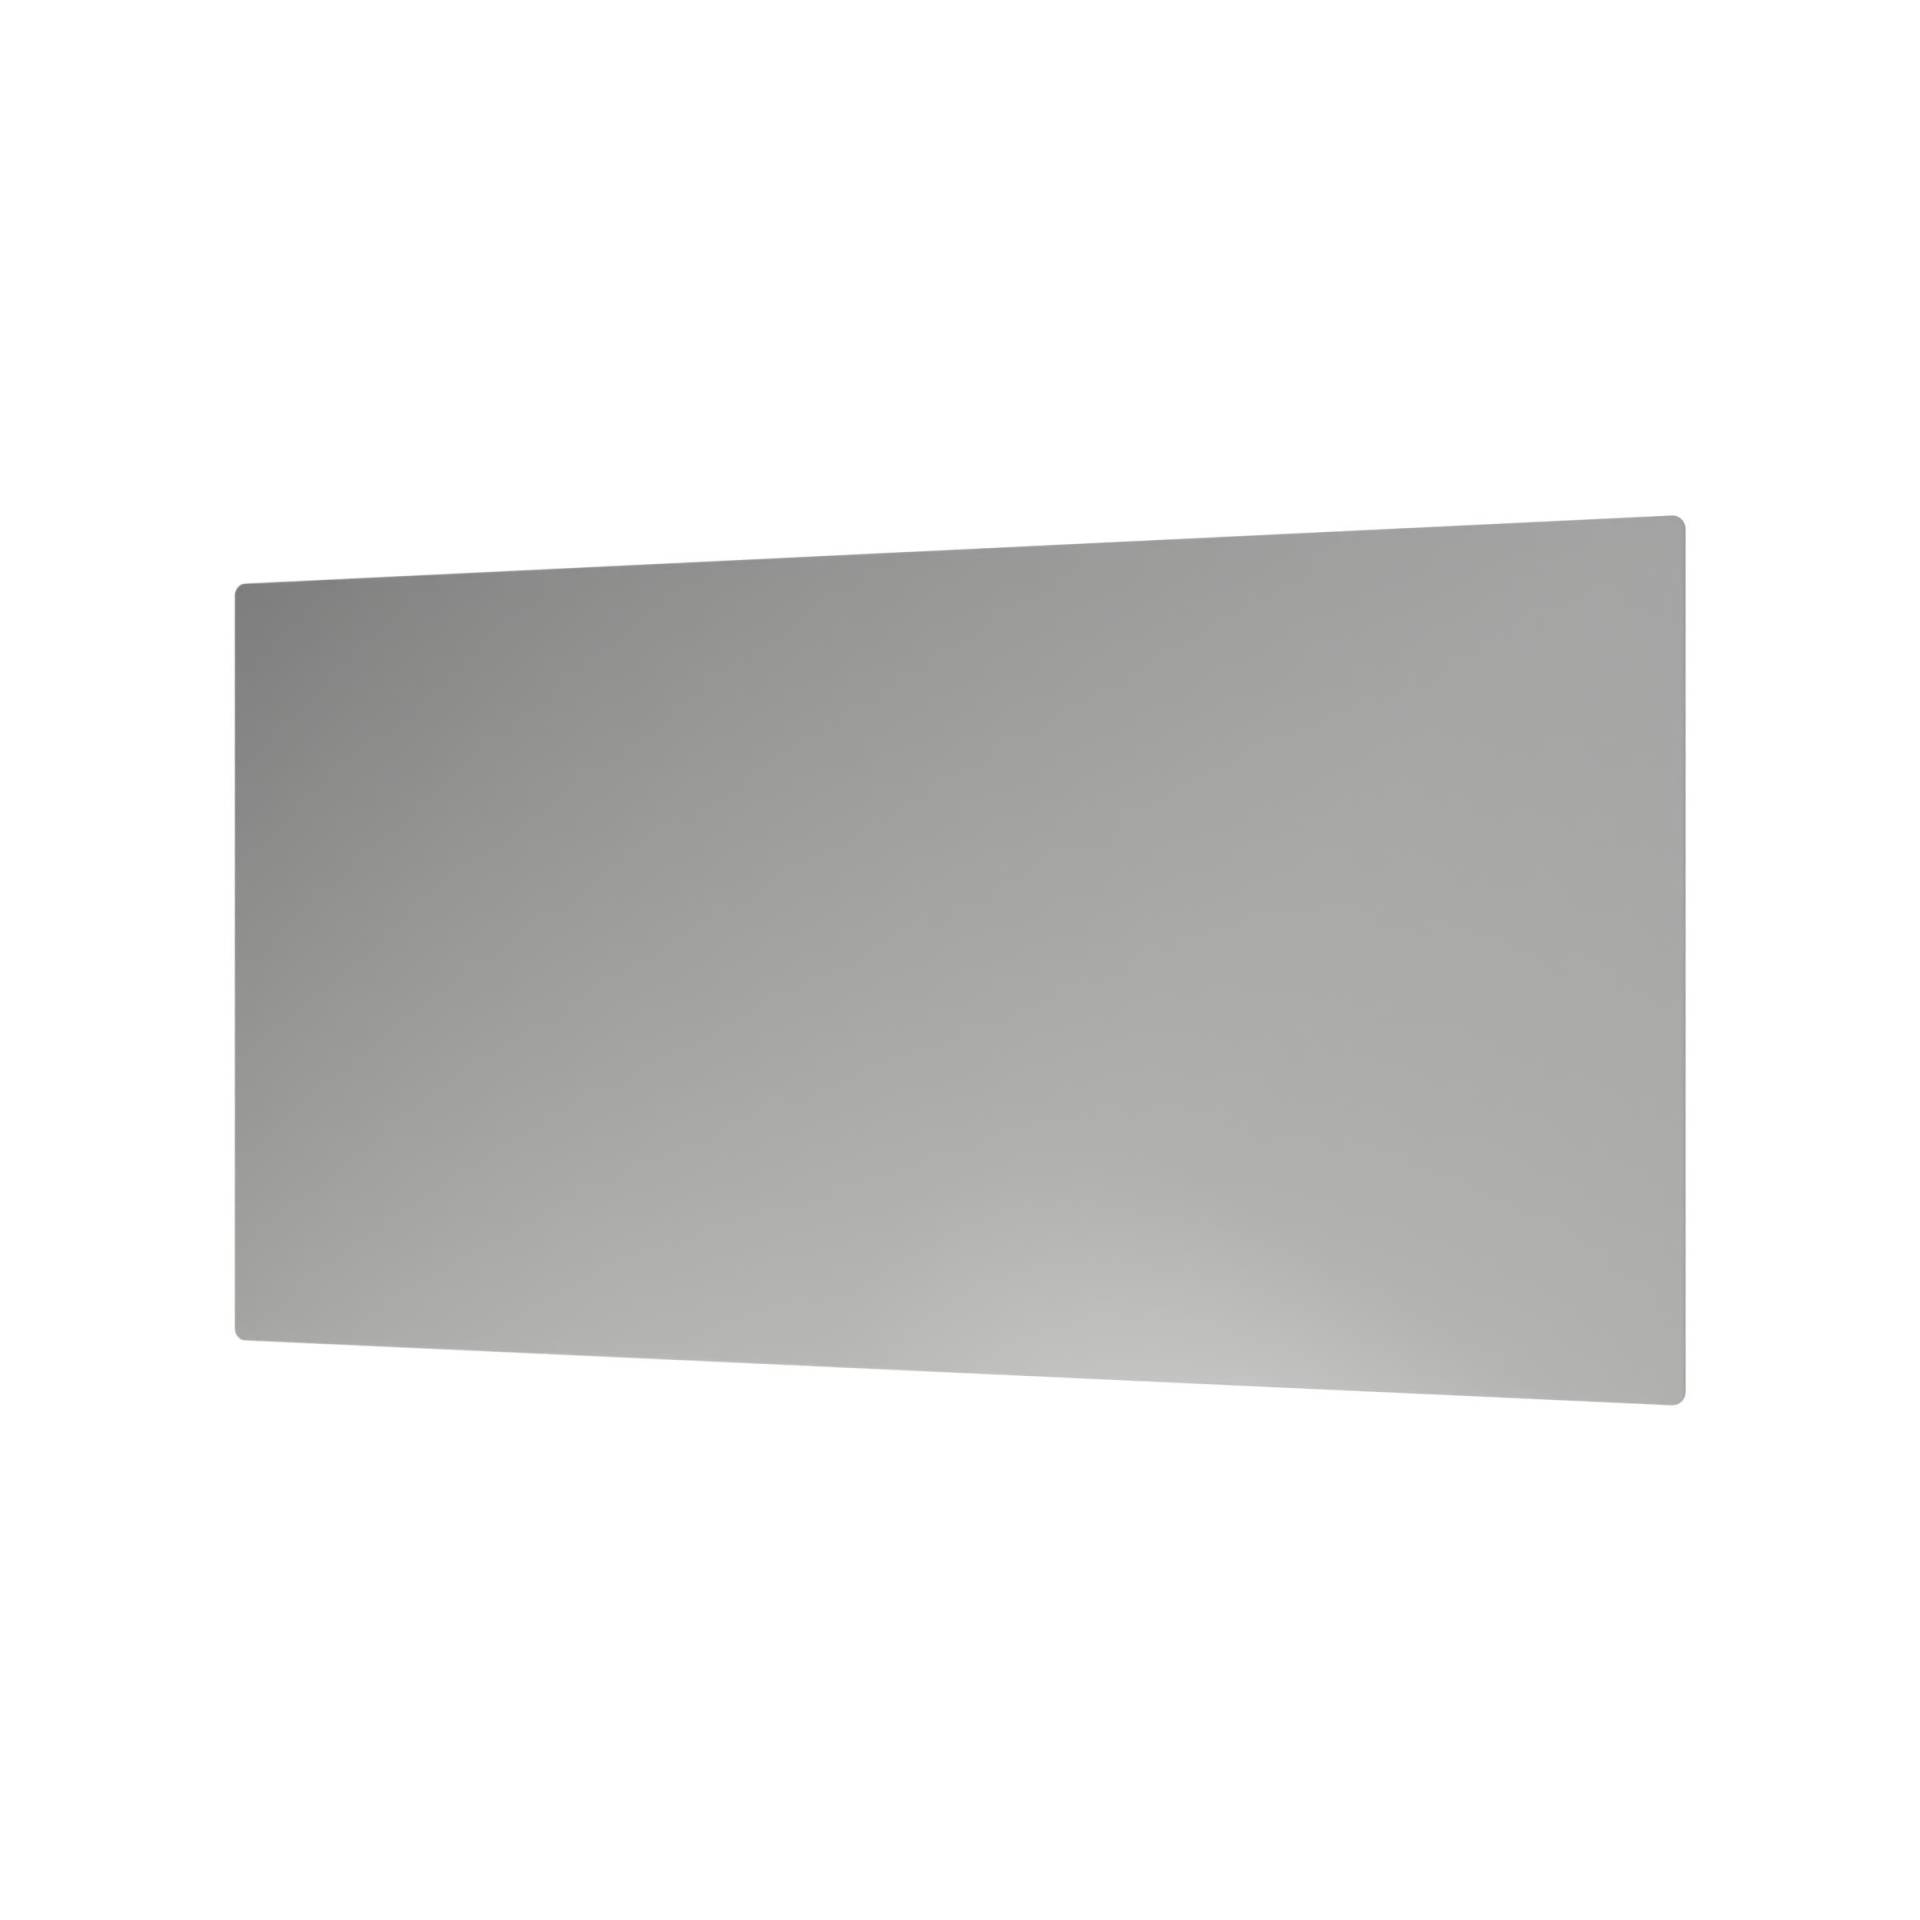 LED Lichtspiegel Badspiegel 2137 - 140 x 70 cm von Bernstein